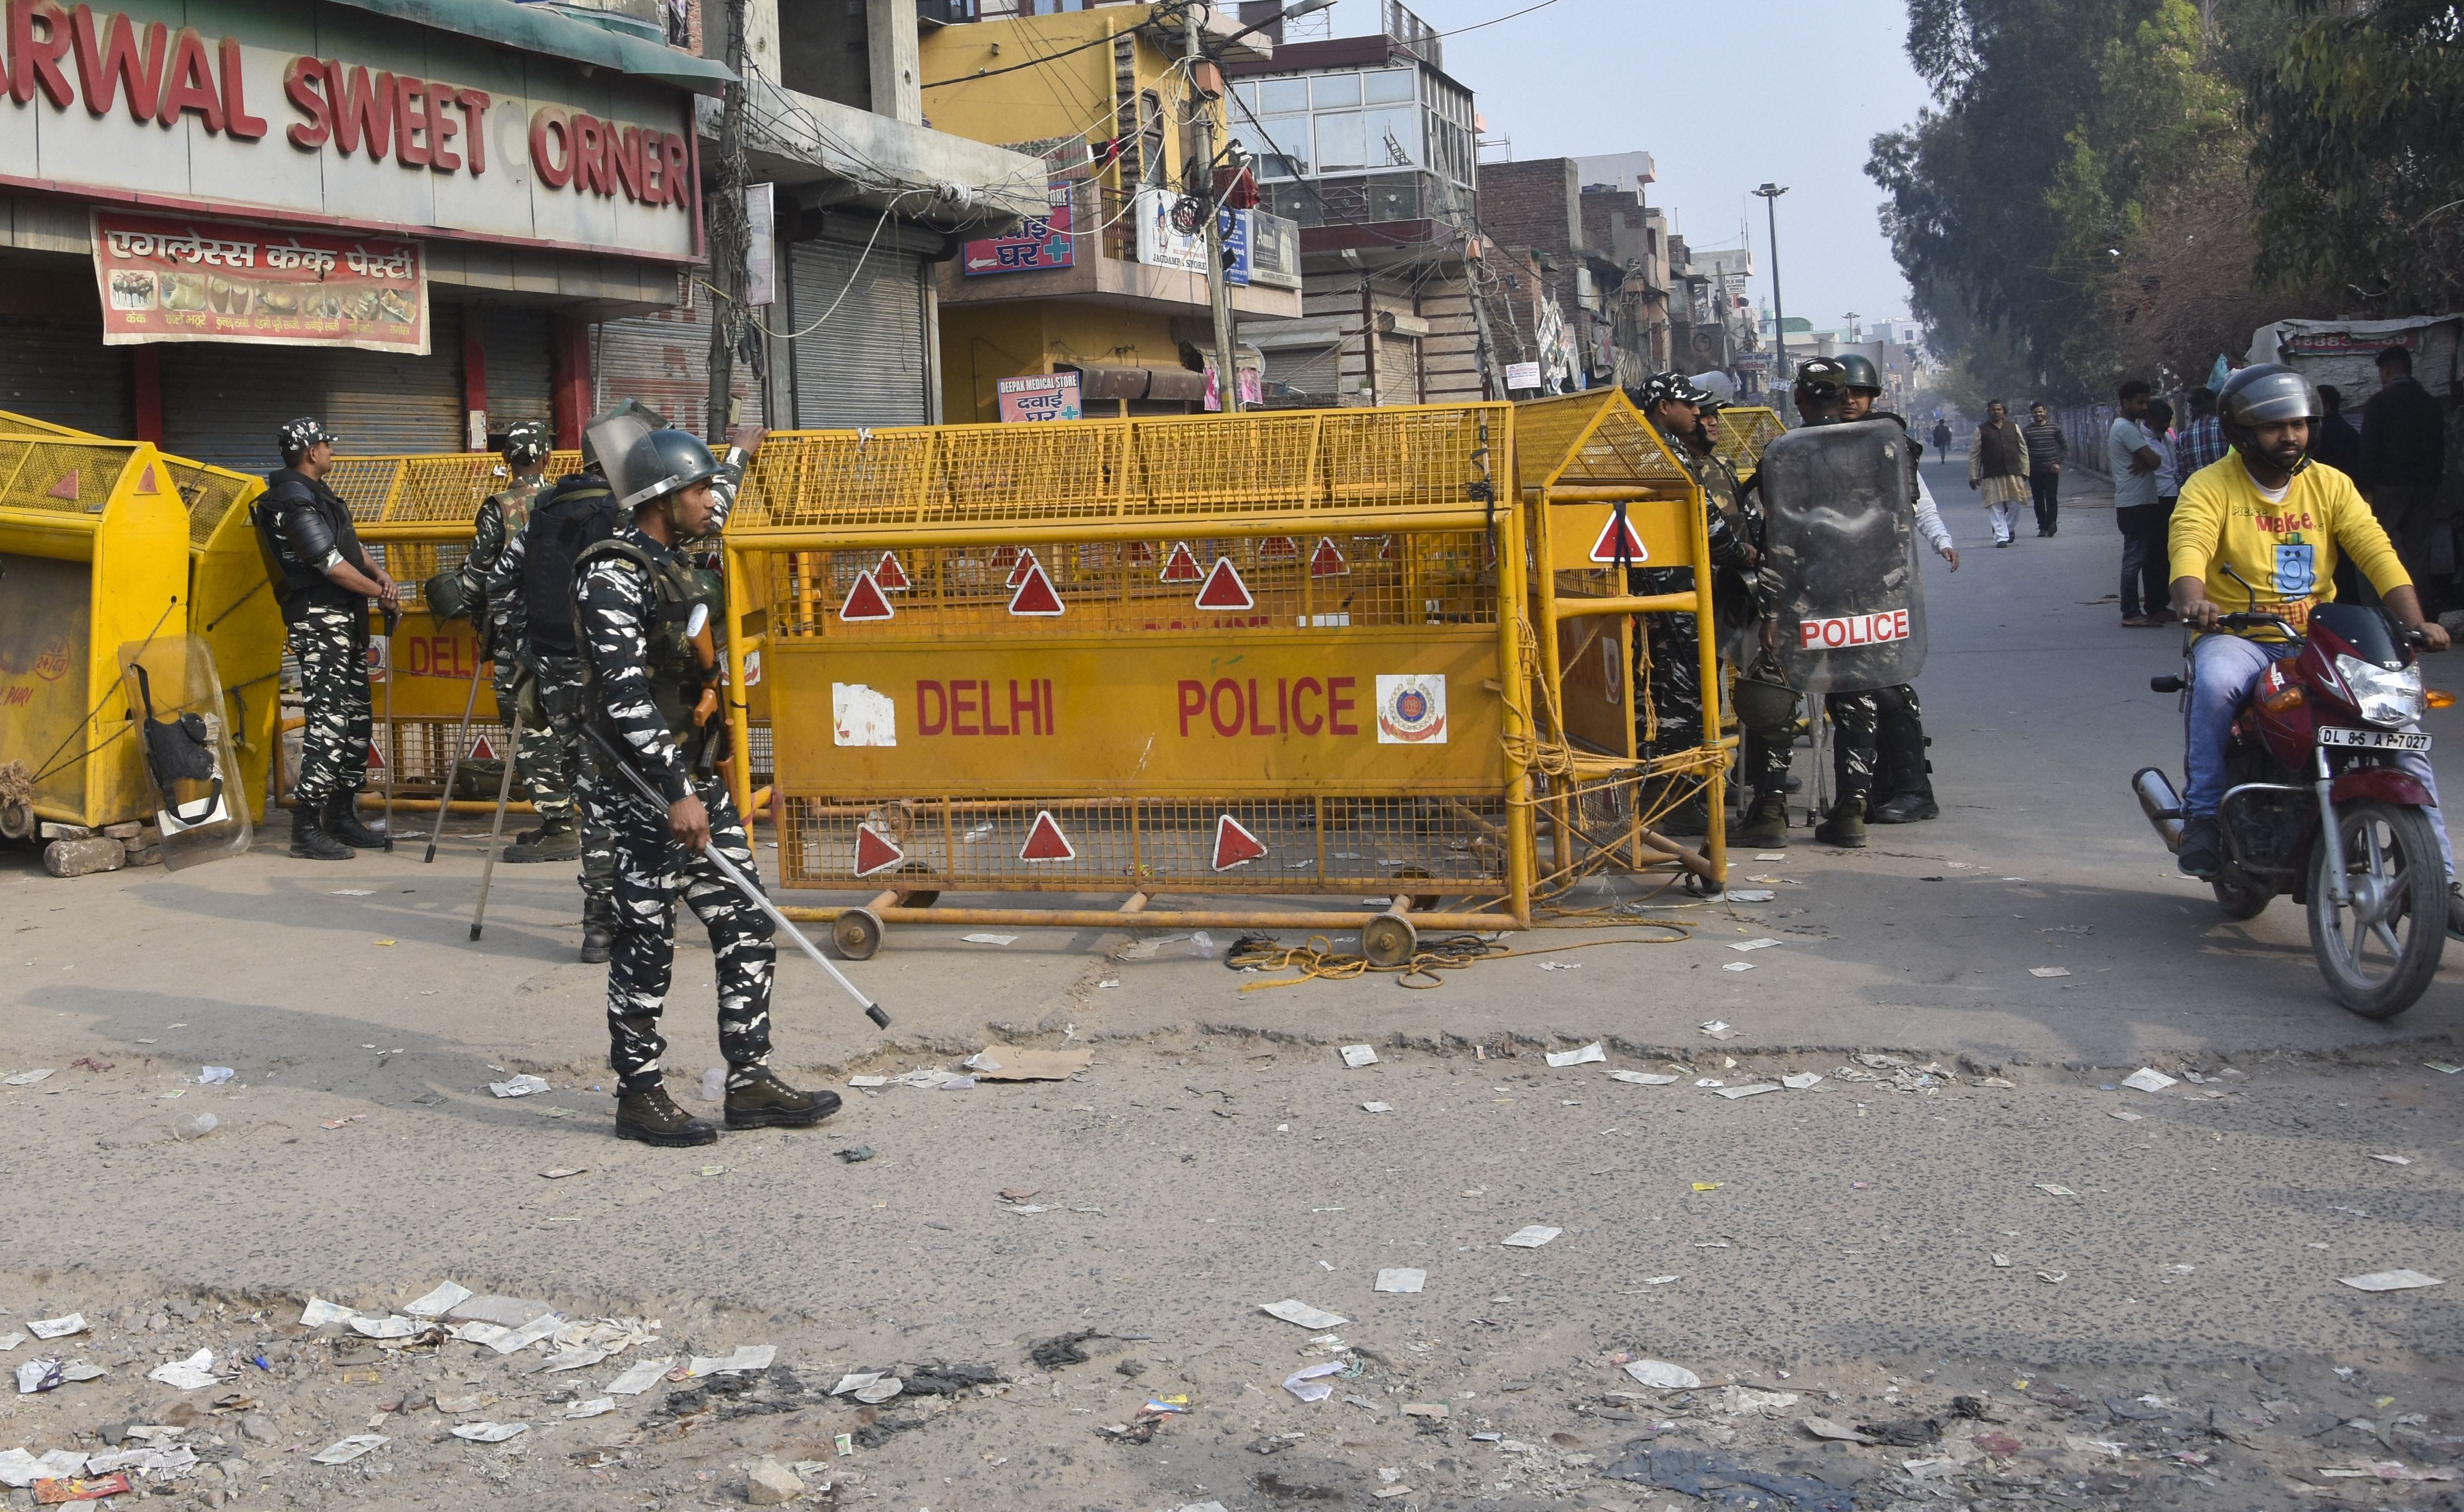 NGO seeks FIR, arrest of people involved in northeast Delhi violence